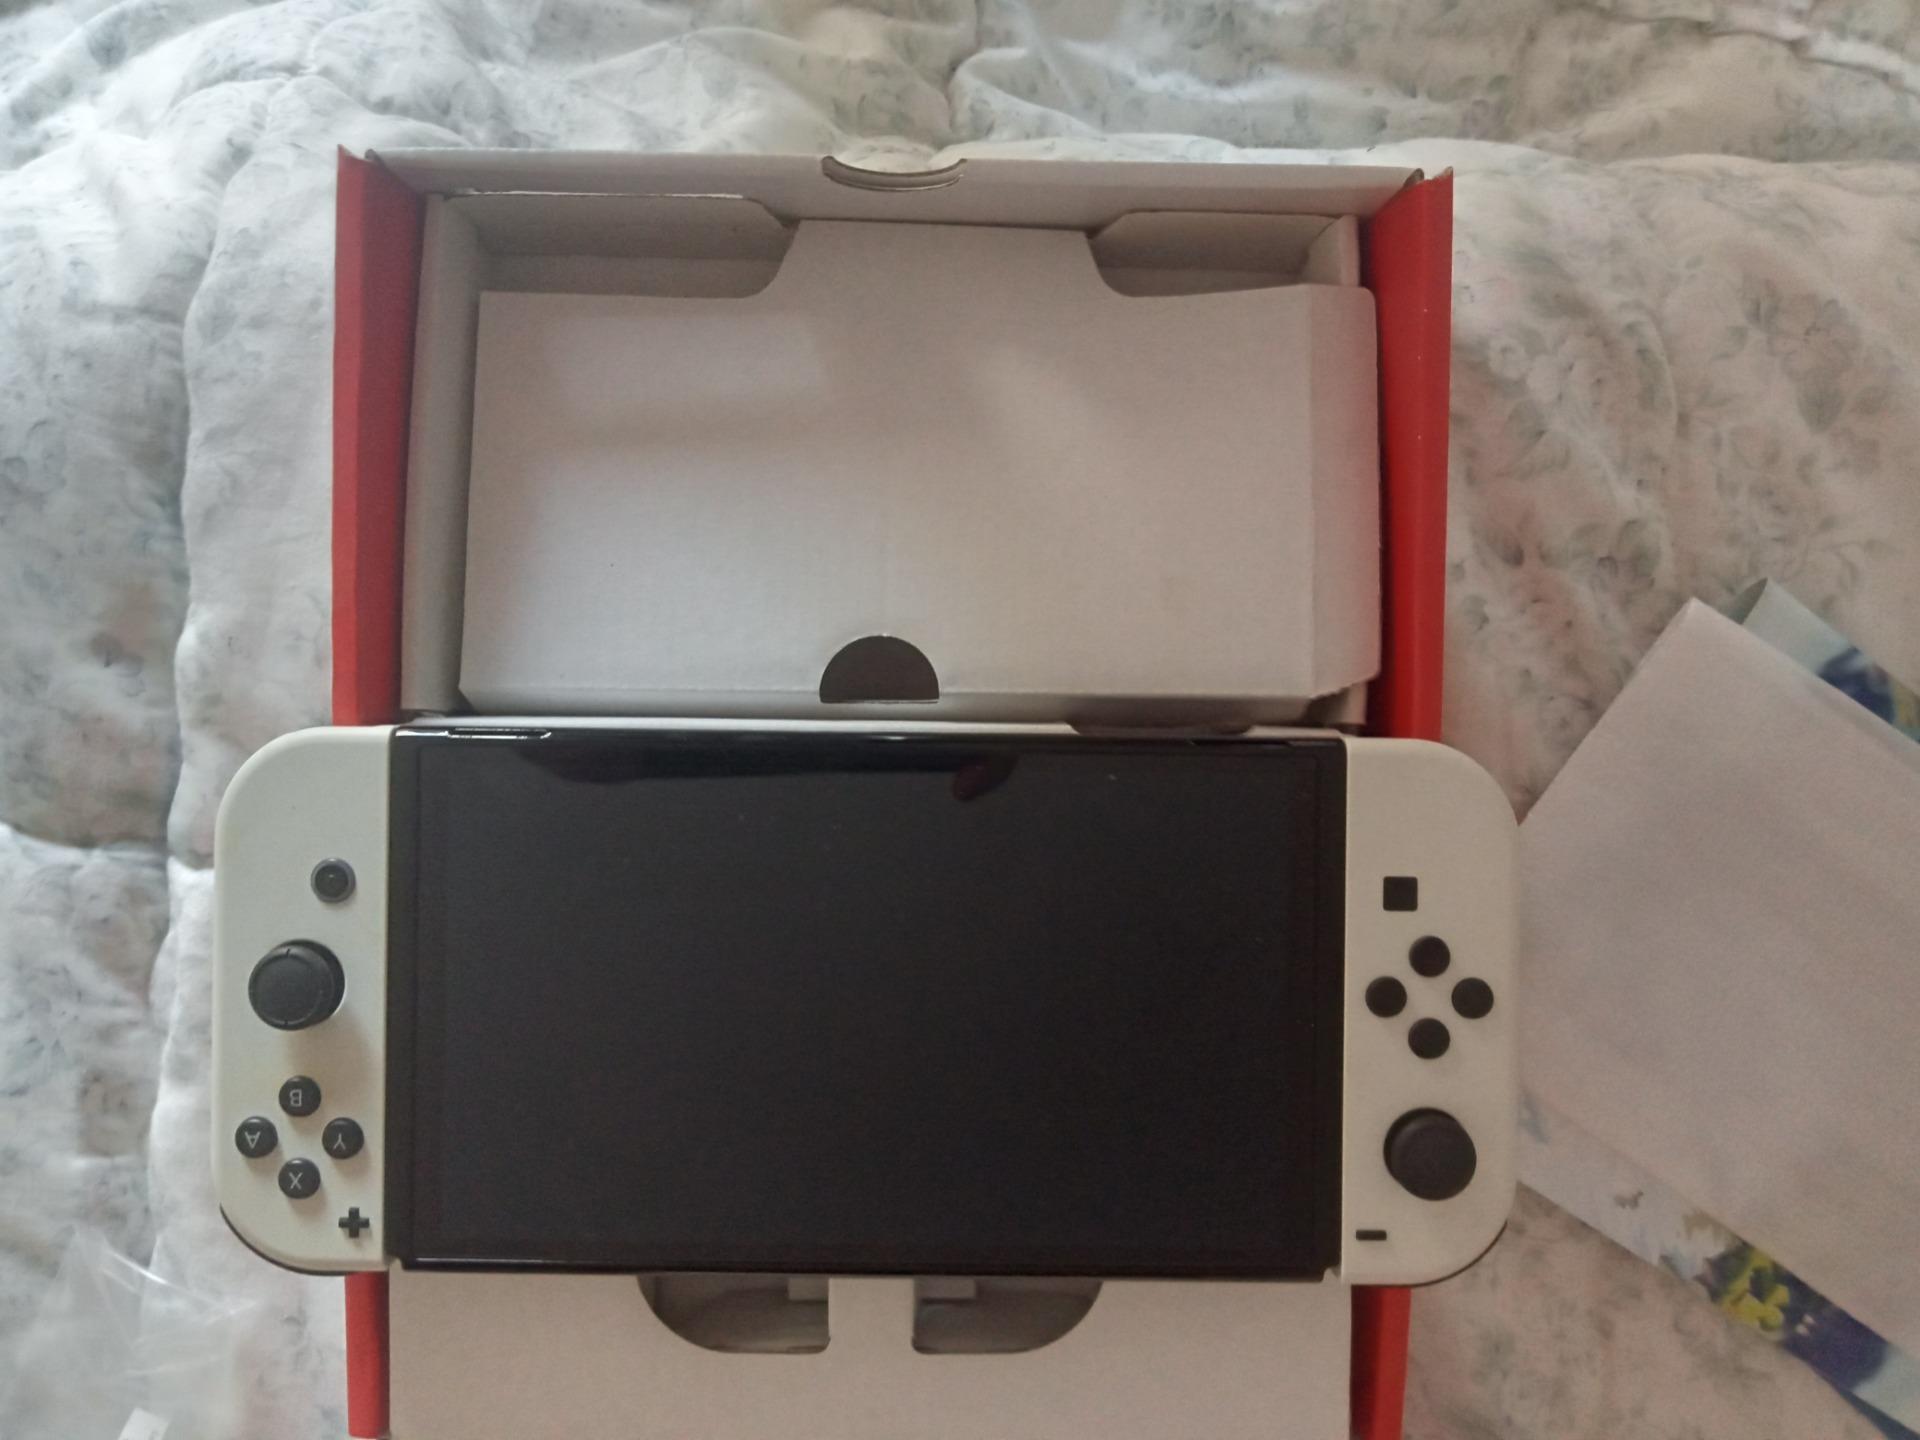 Foto 2 de Nintendo switch cambio por un teléfono móvil 